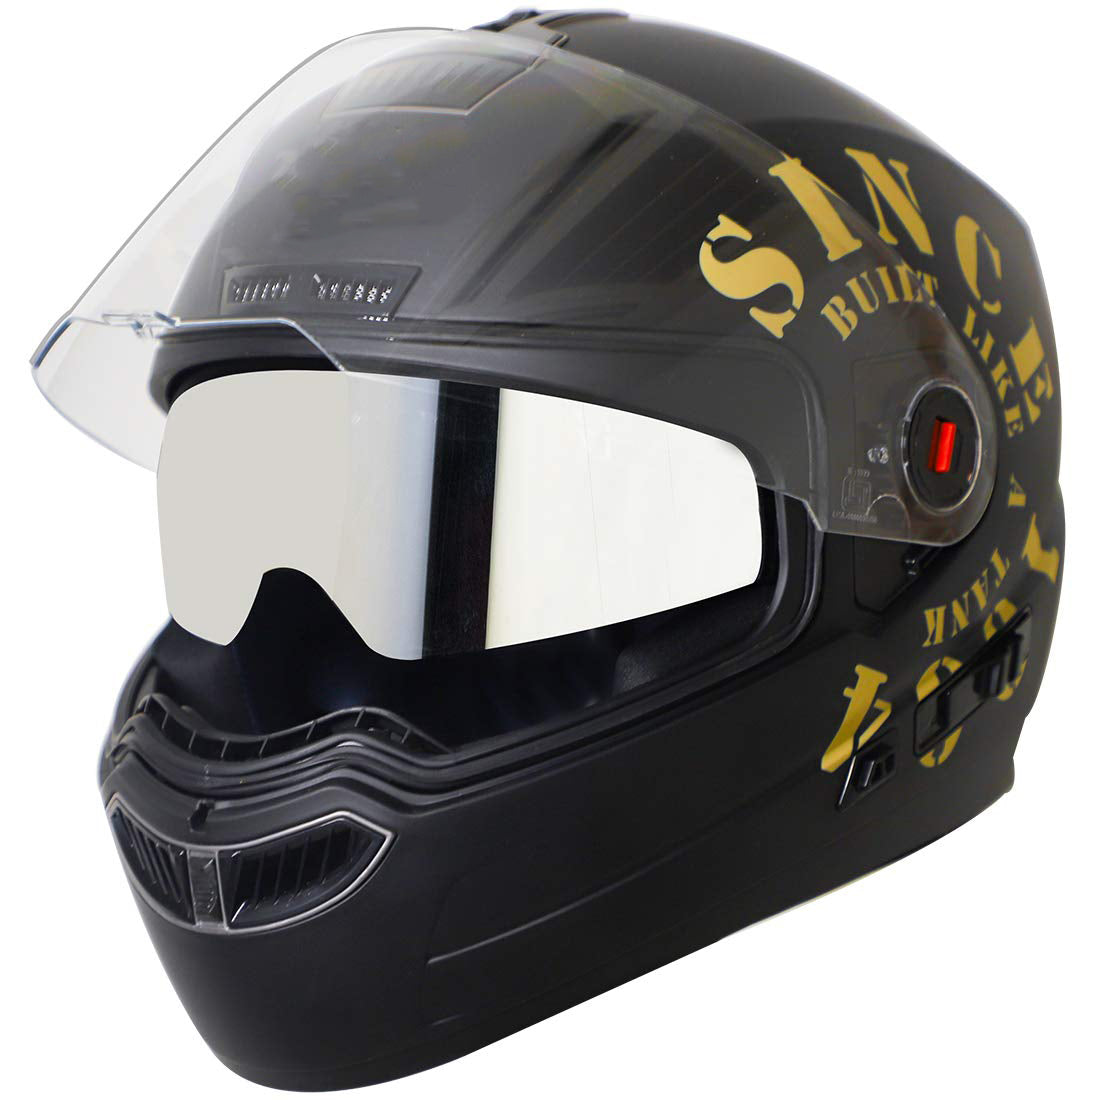 Detec™ Full Face Graphics Helmet, Inner Silver Sun Shield and Outer Clear Visor